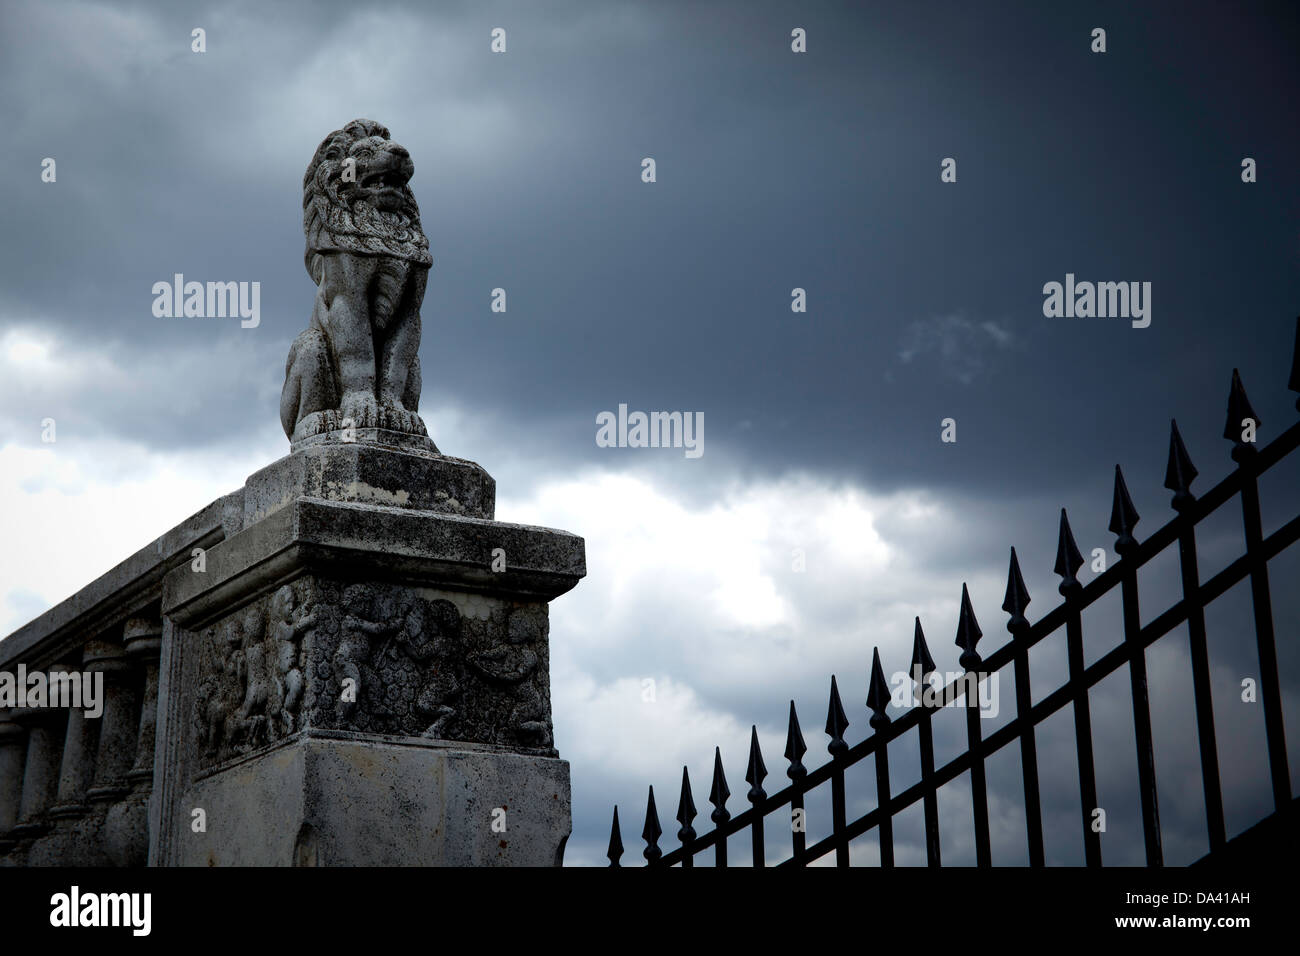 Löwenstatue mit Eisenzaun und regnerischen Himmel. Stockfoto